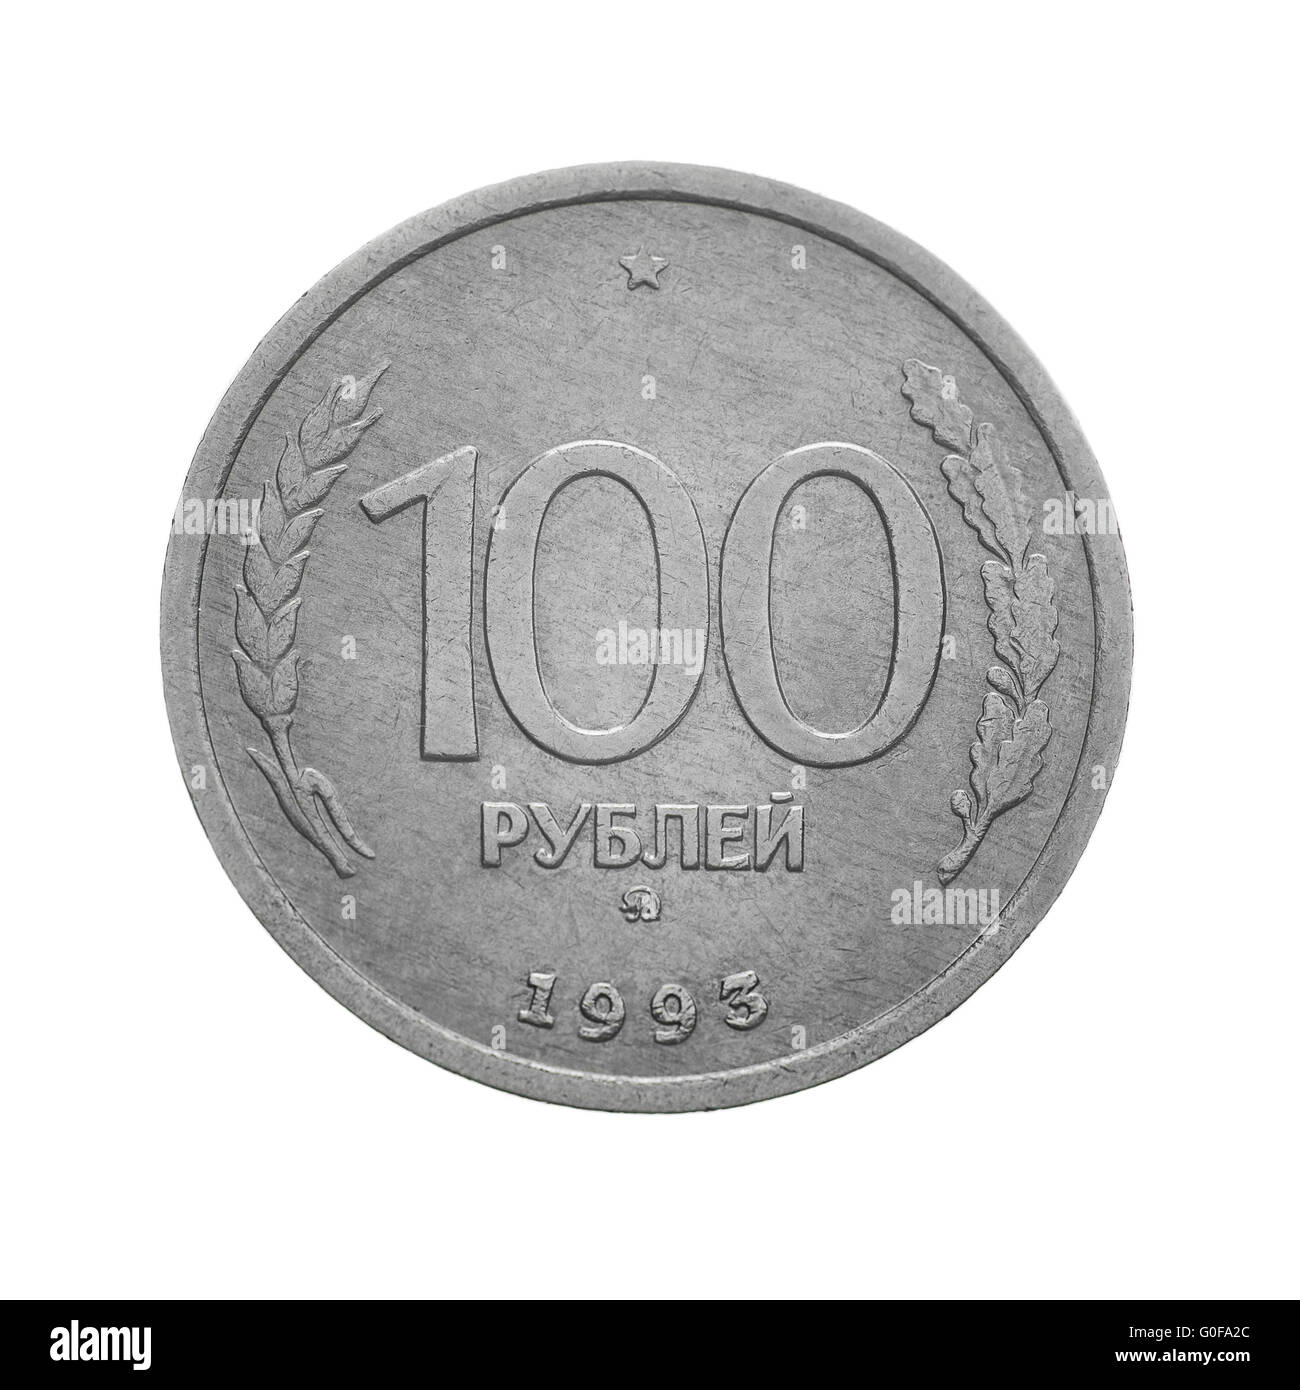 Rus 100 rubl. Бесконечно рублей. 35 российских рублей